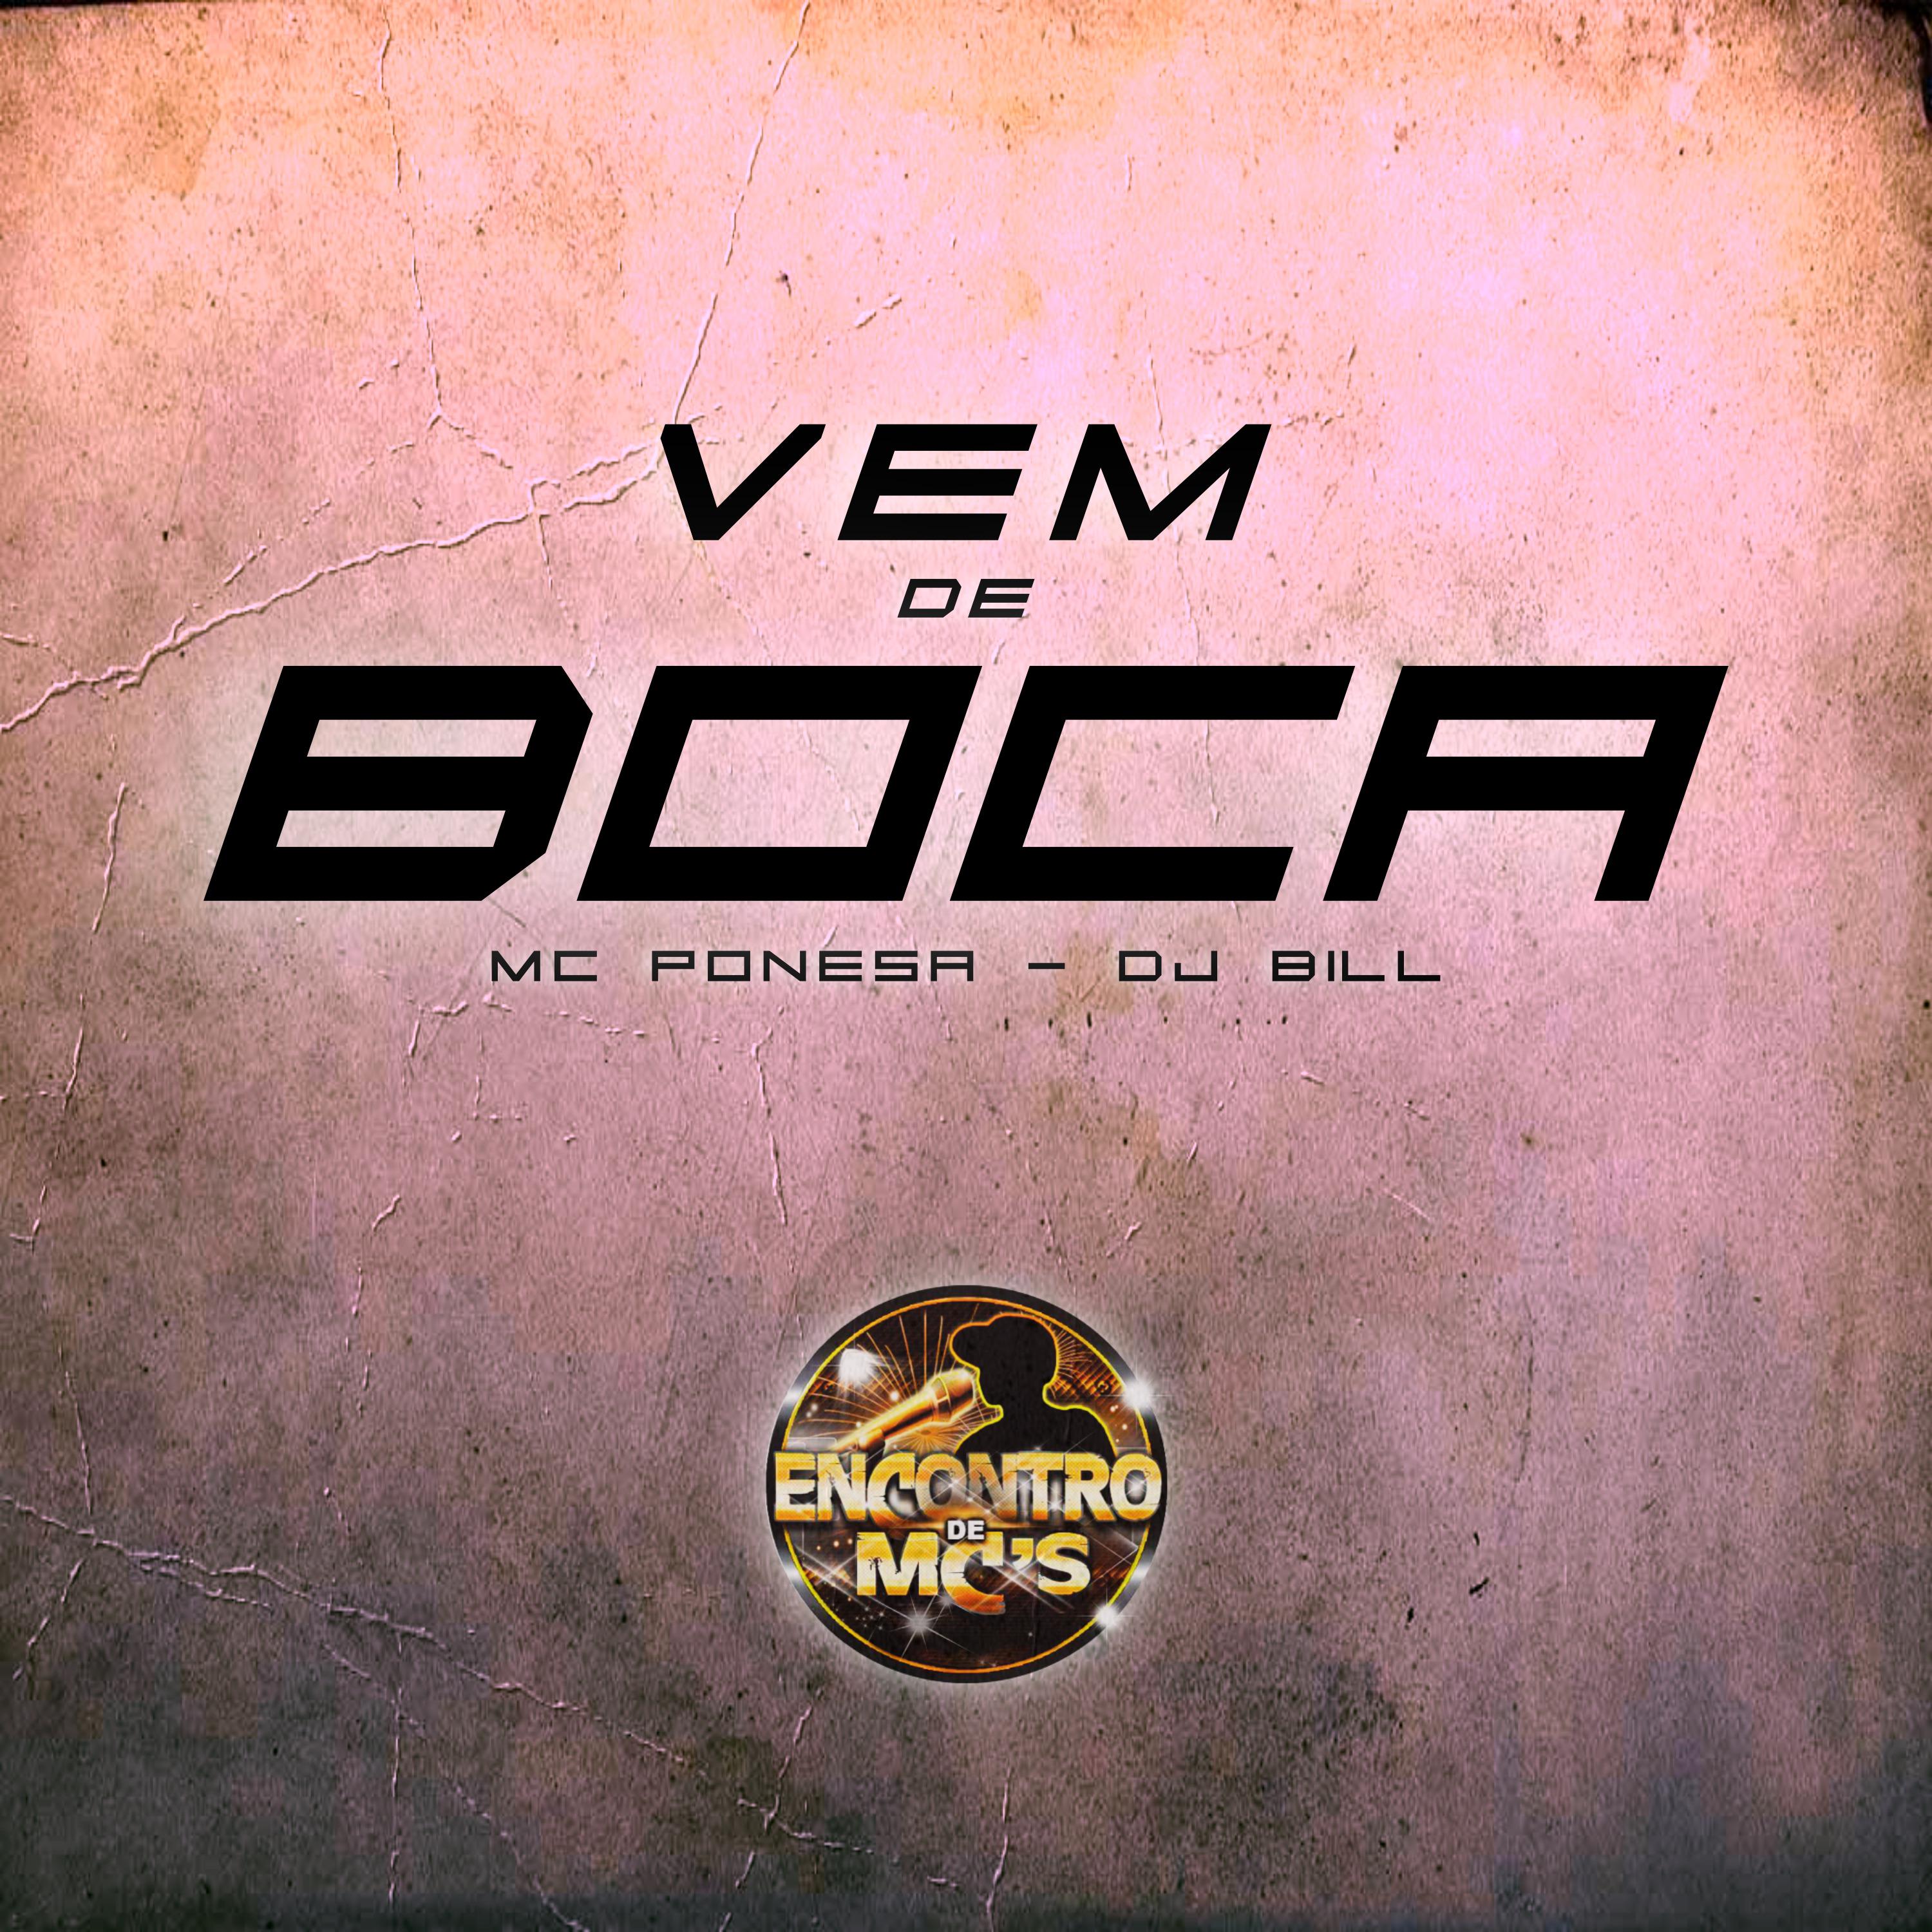 Постер альбома Vem de Boca